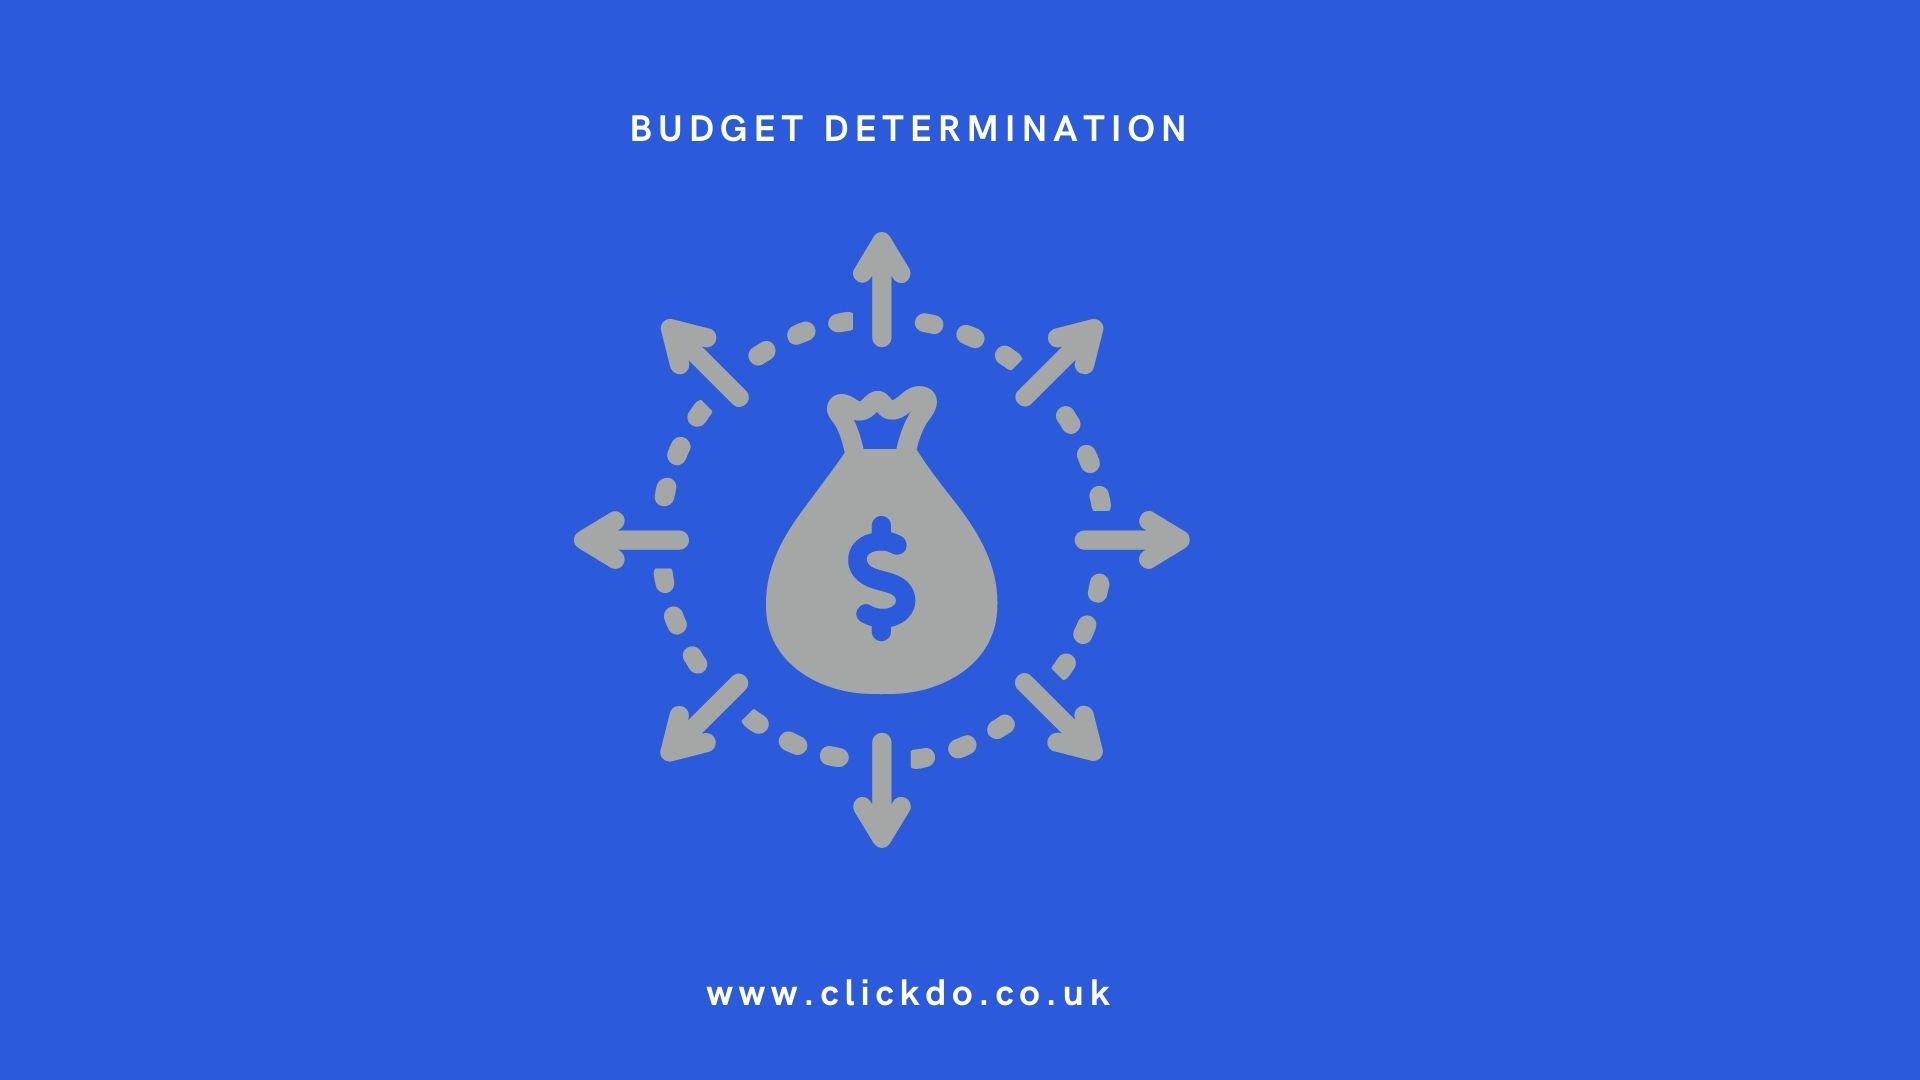 Budget determination